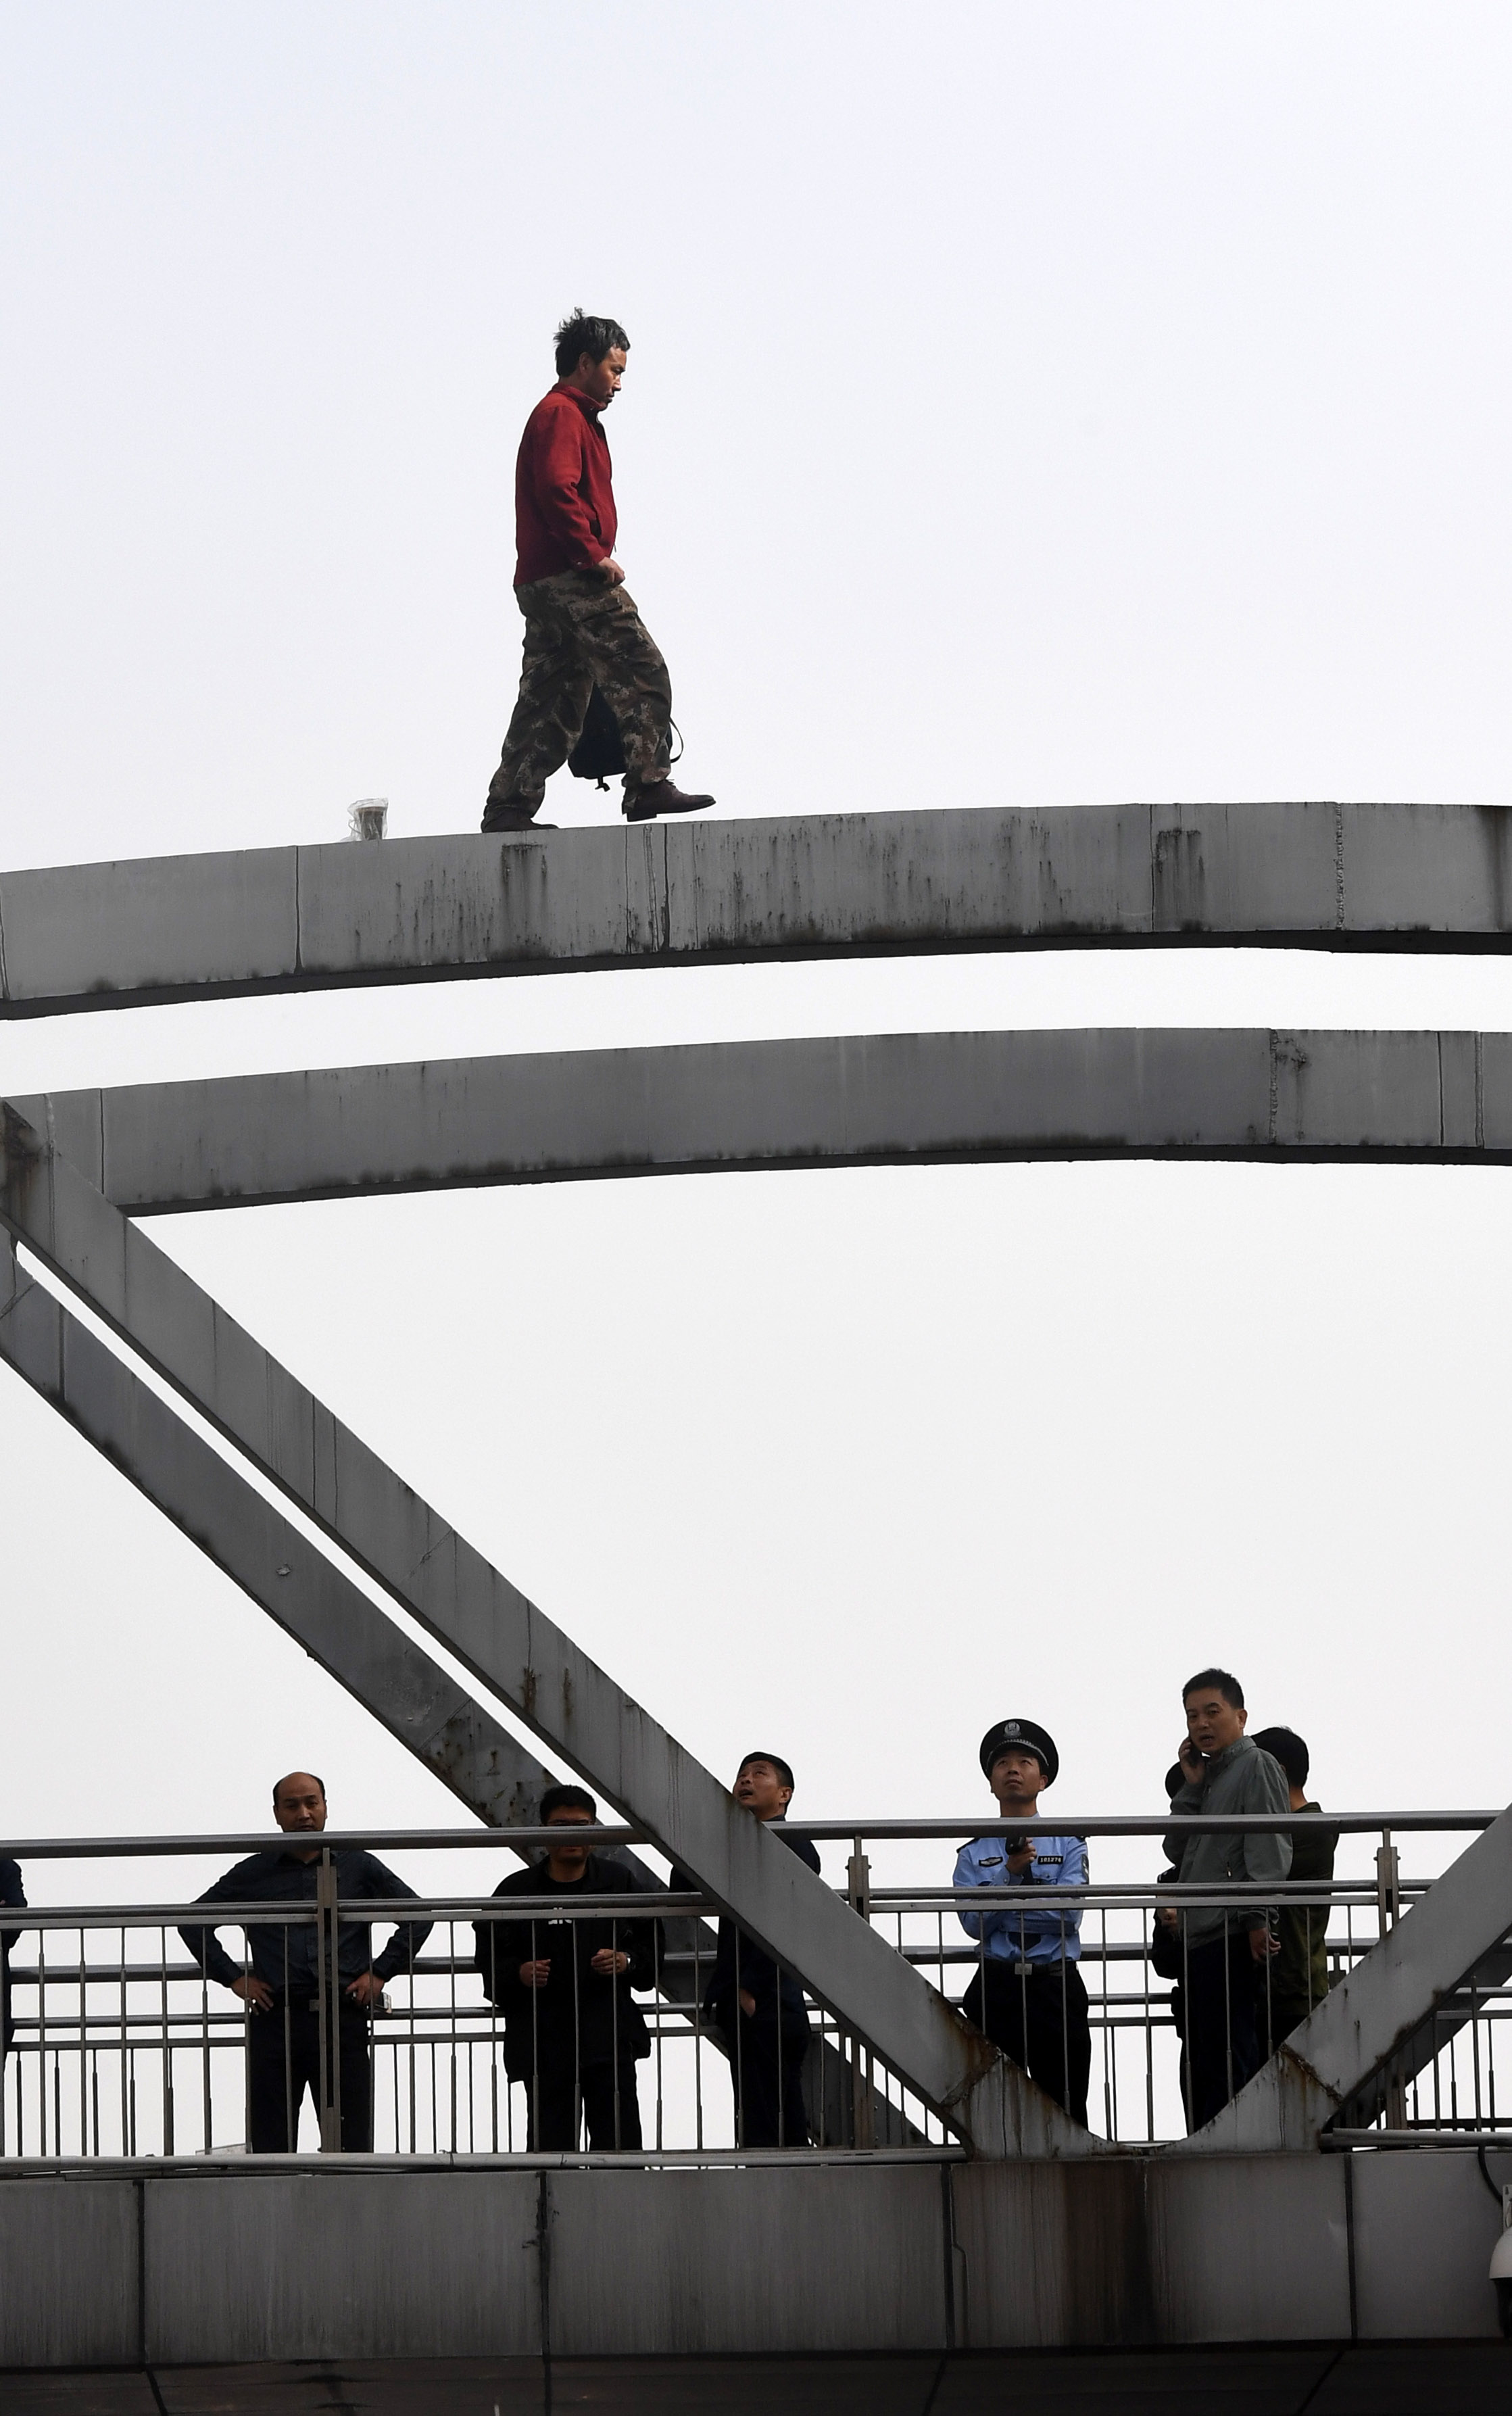 郑州:一名欲跳桥轻生男子被成功救下